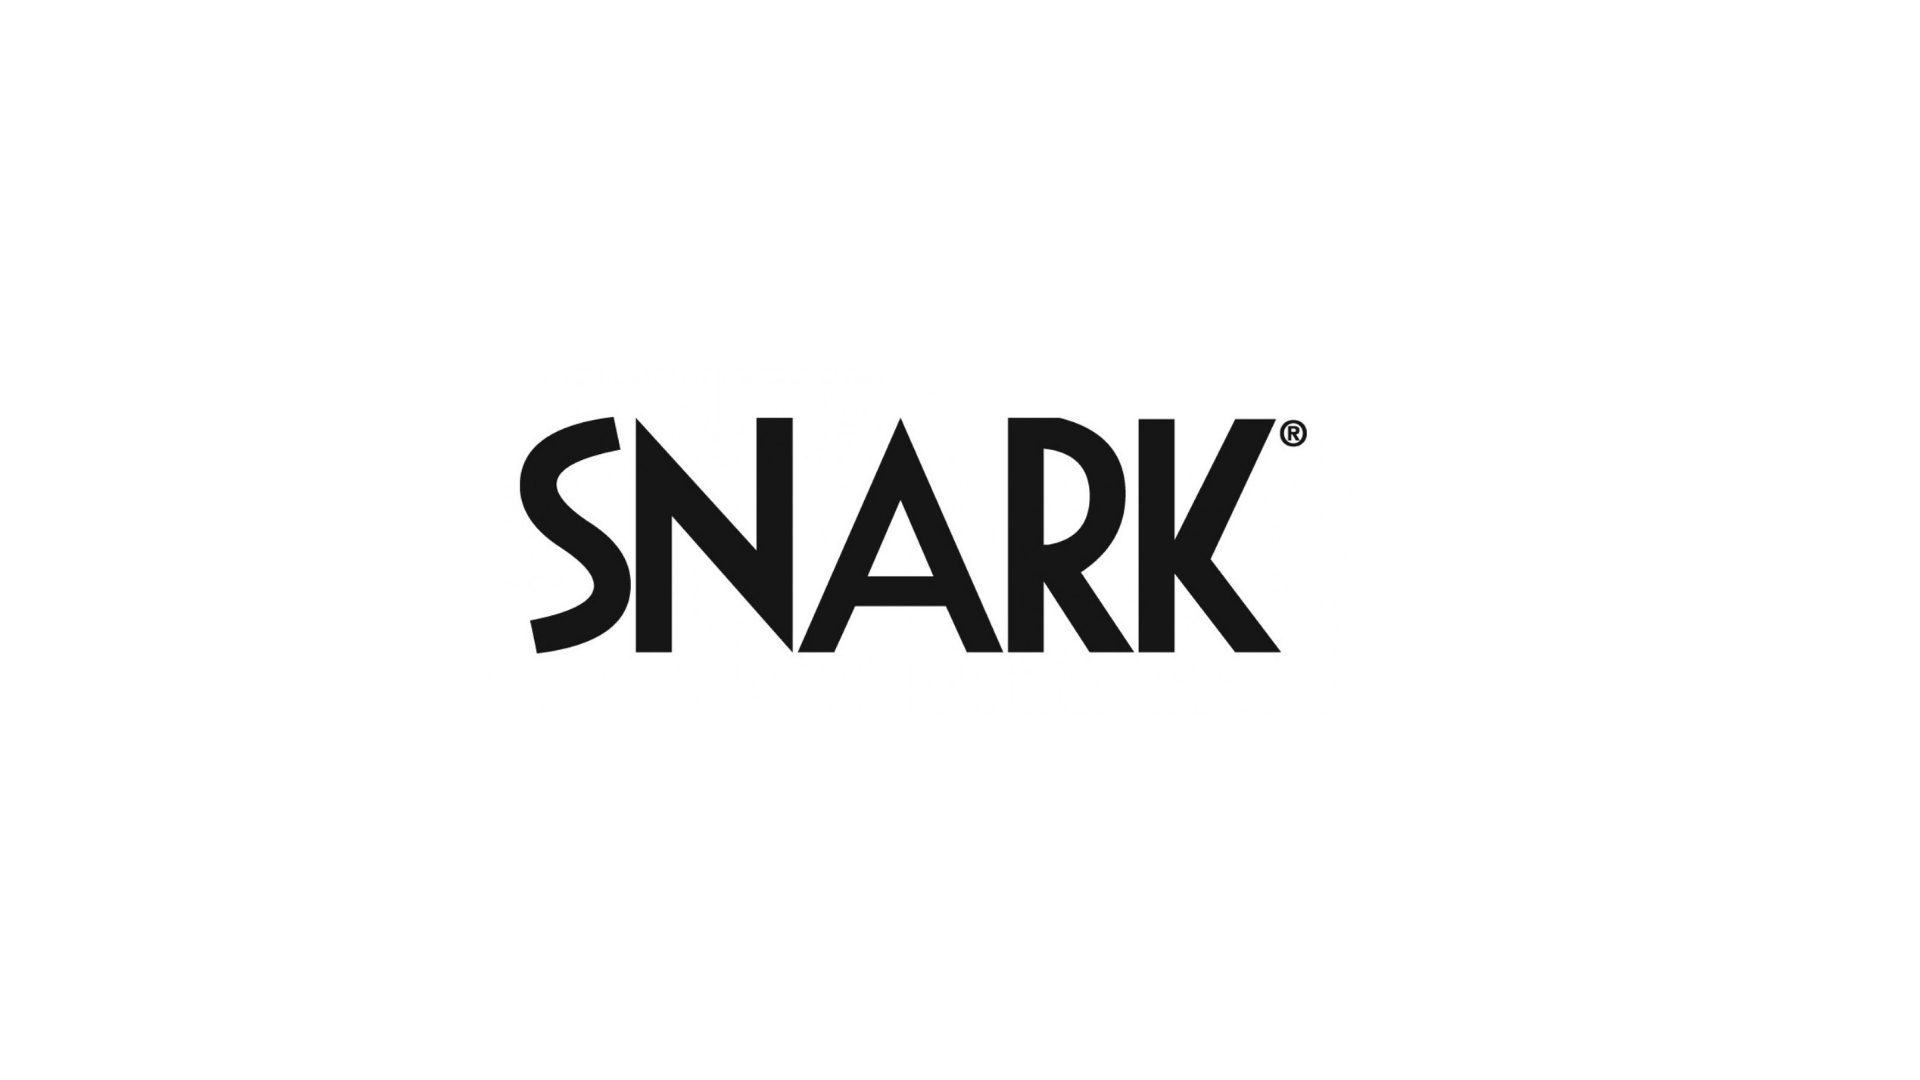 snark logo done.jpg